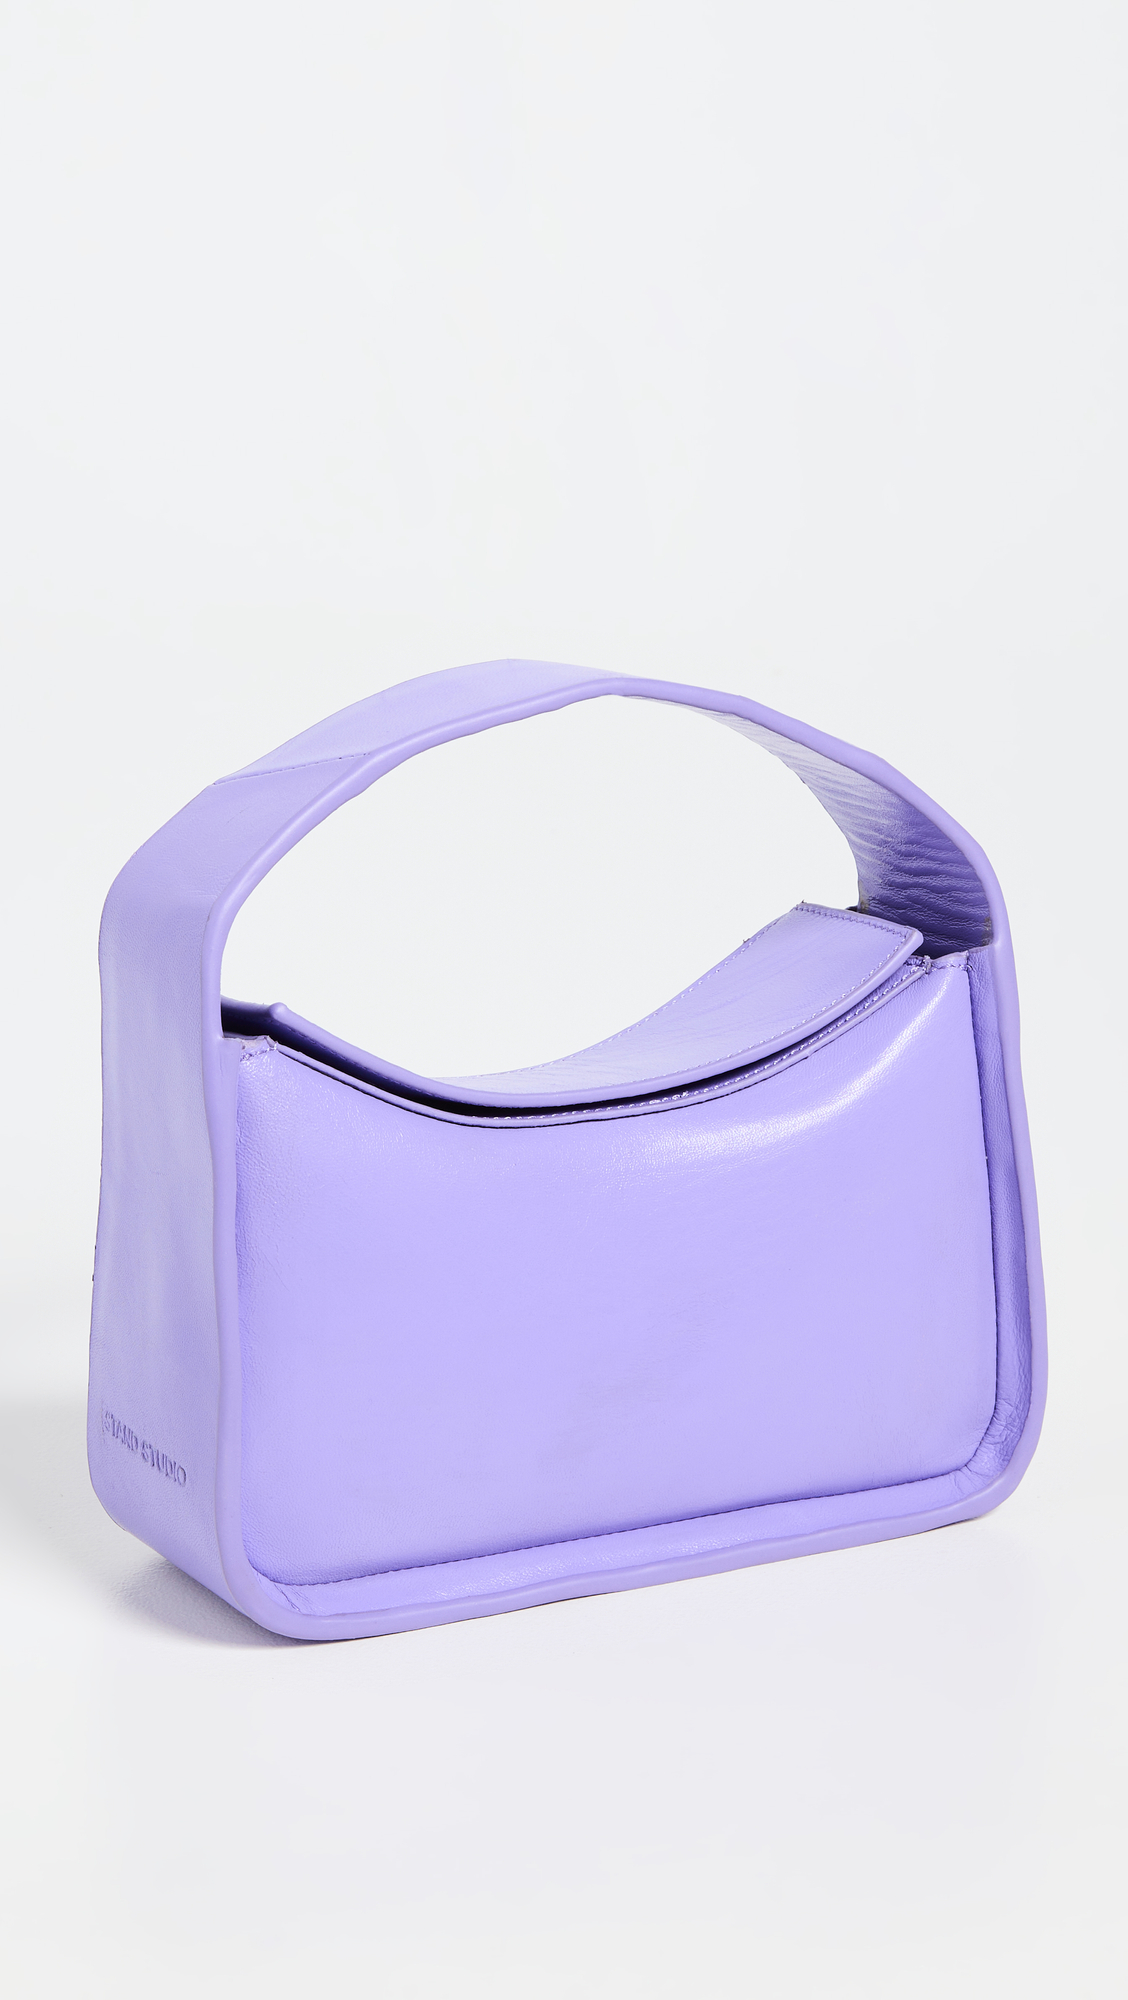 shopbop designer bags on sale 307448 1684962179994